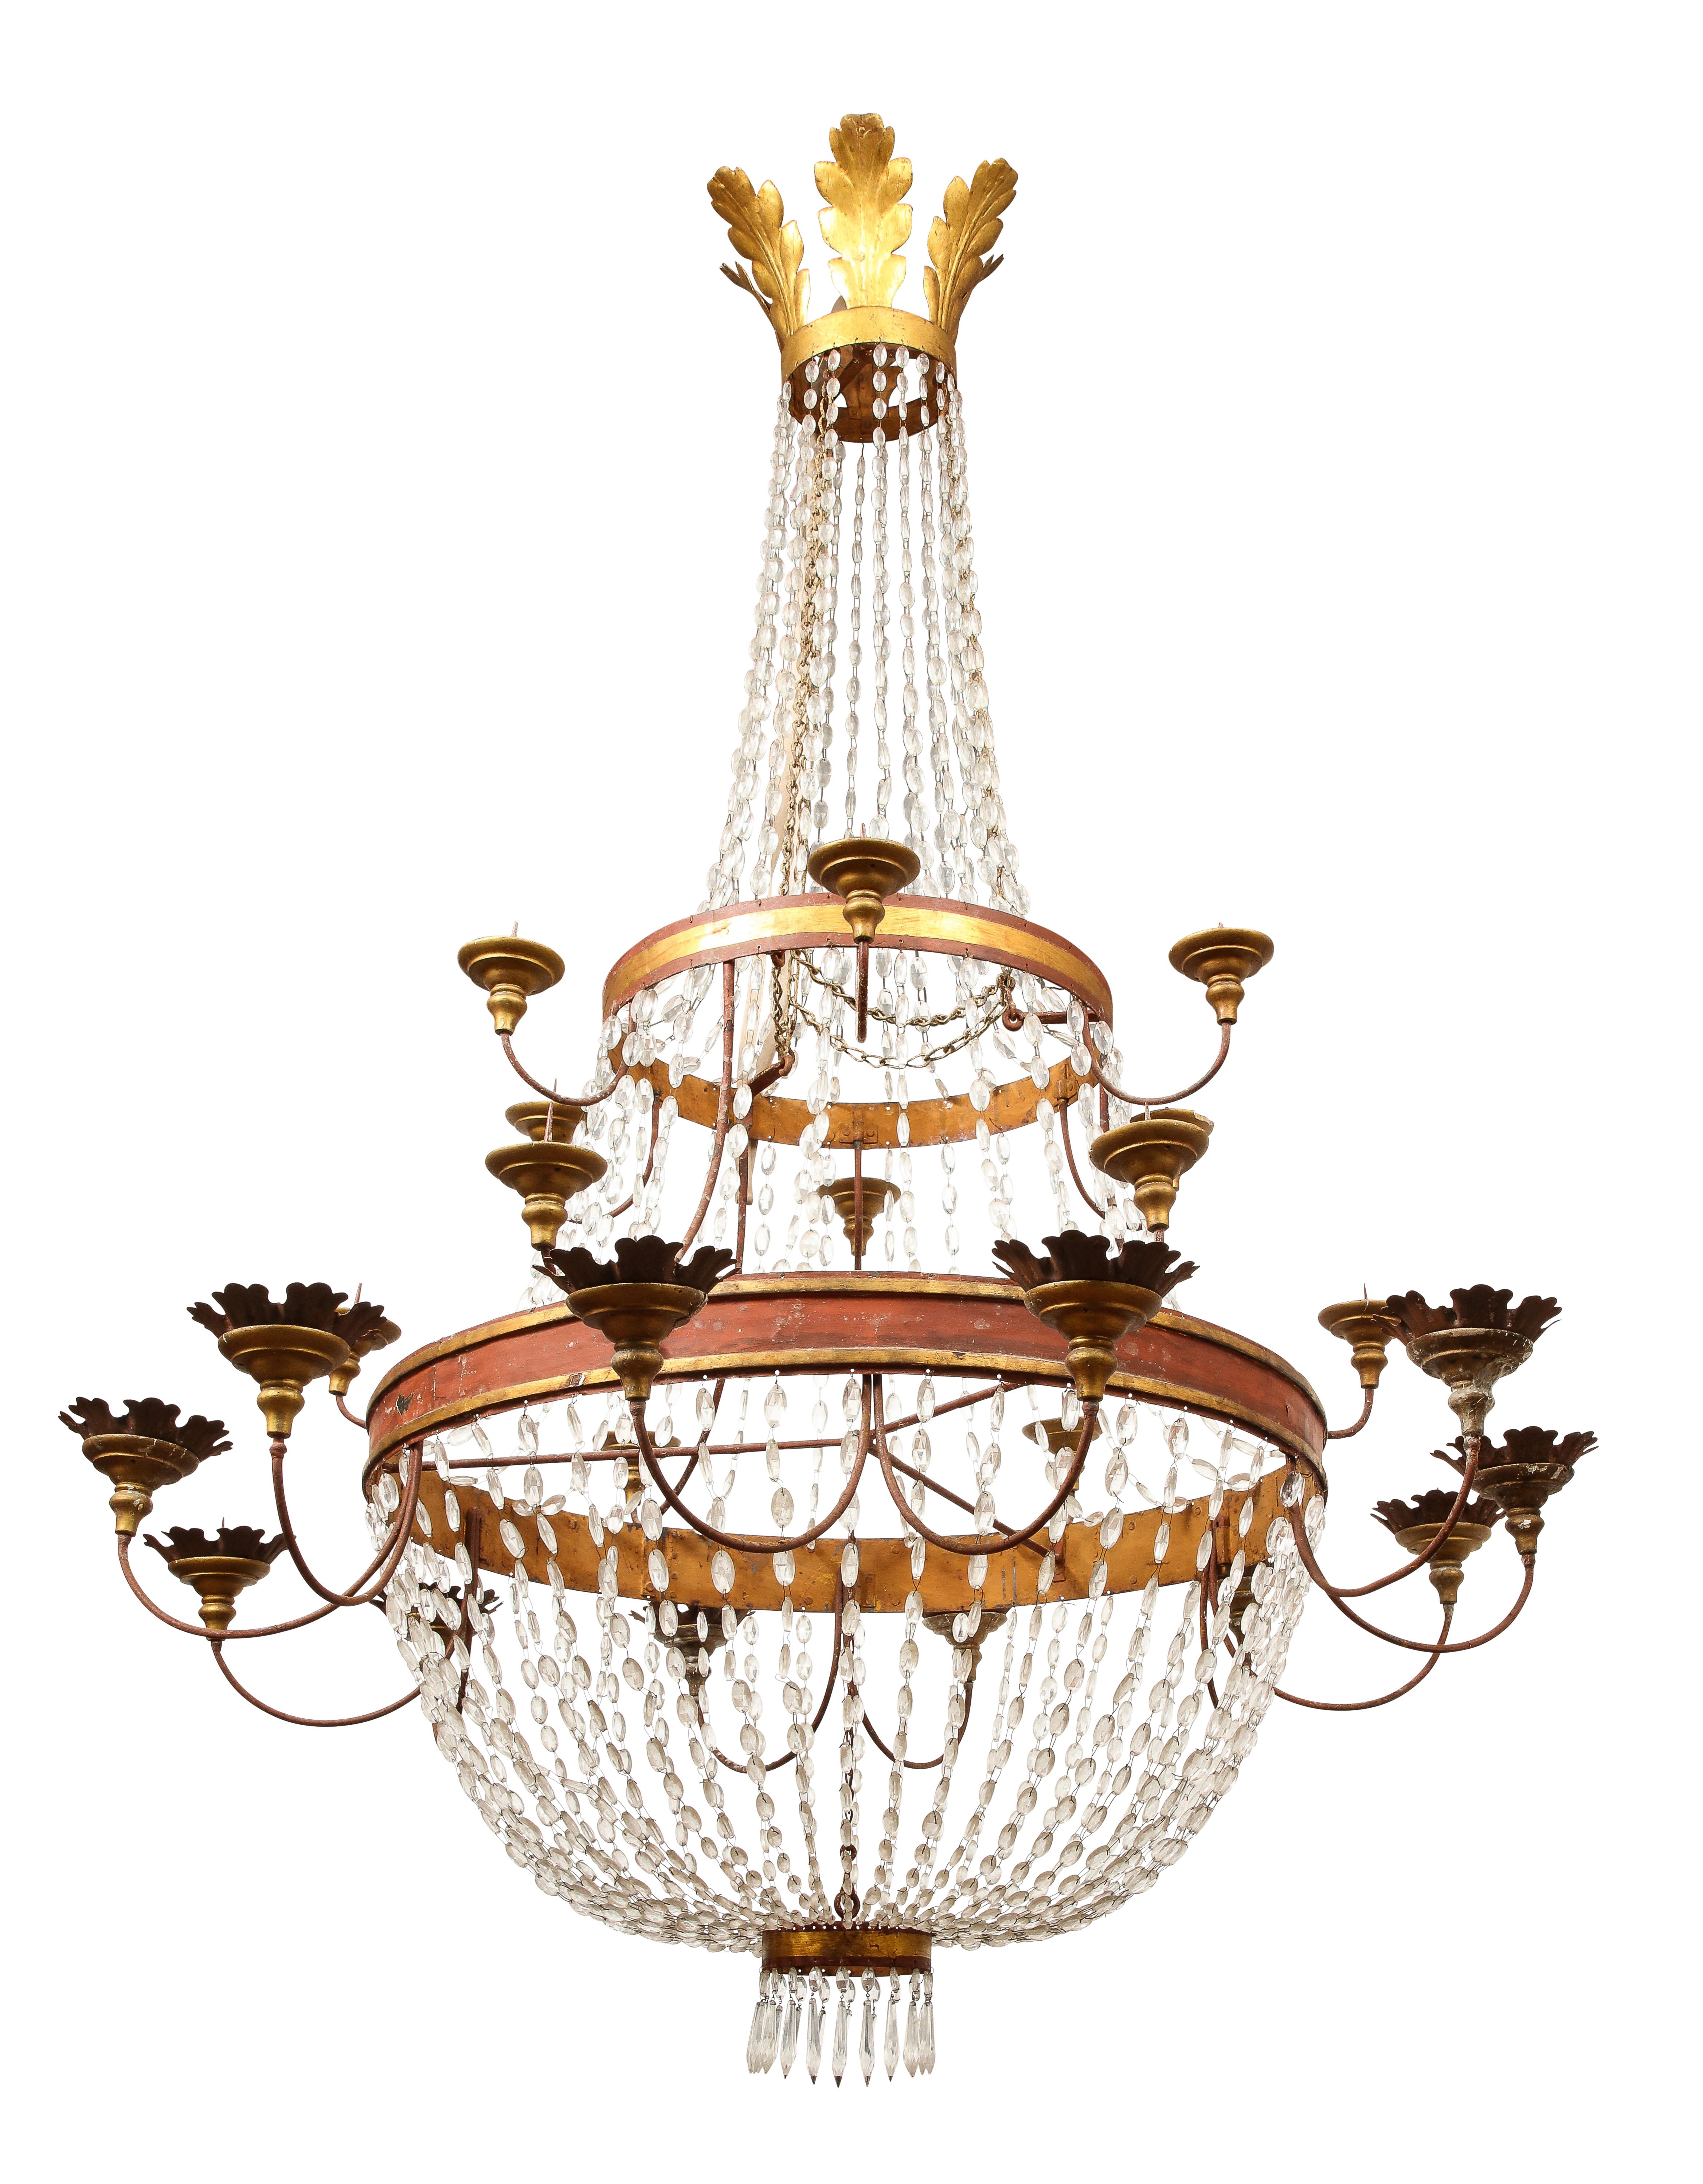 Impressionnant lustre de style néoclassique italien du 17e siècle en cristal et en vermeil. ***non électrifié*** 

Il y a 25 chandeliers, dont la partie inférieure est ornée de feuilles décoratives. Des brins de cristal se déploient entre le